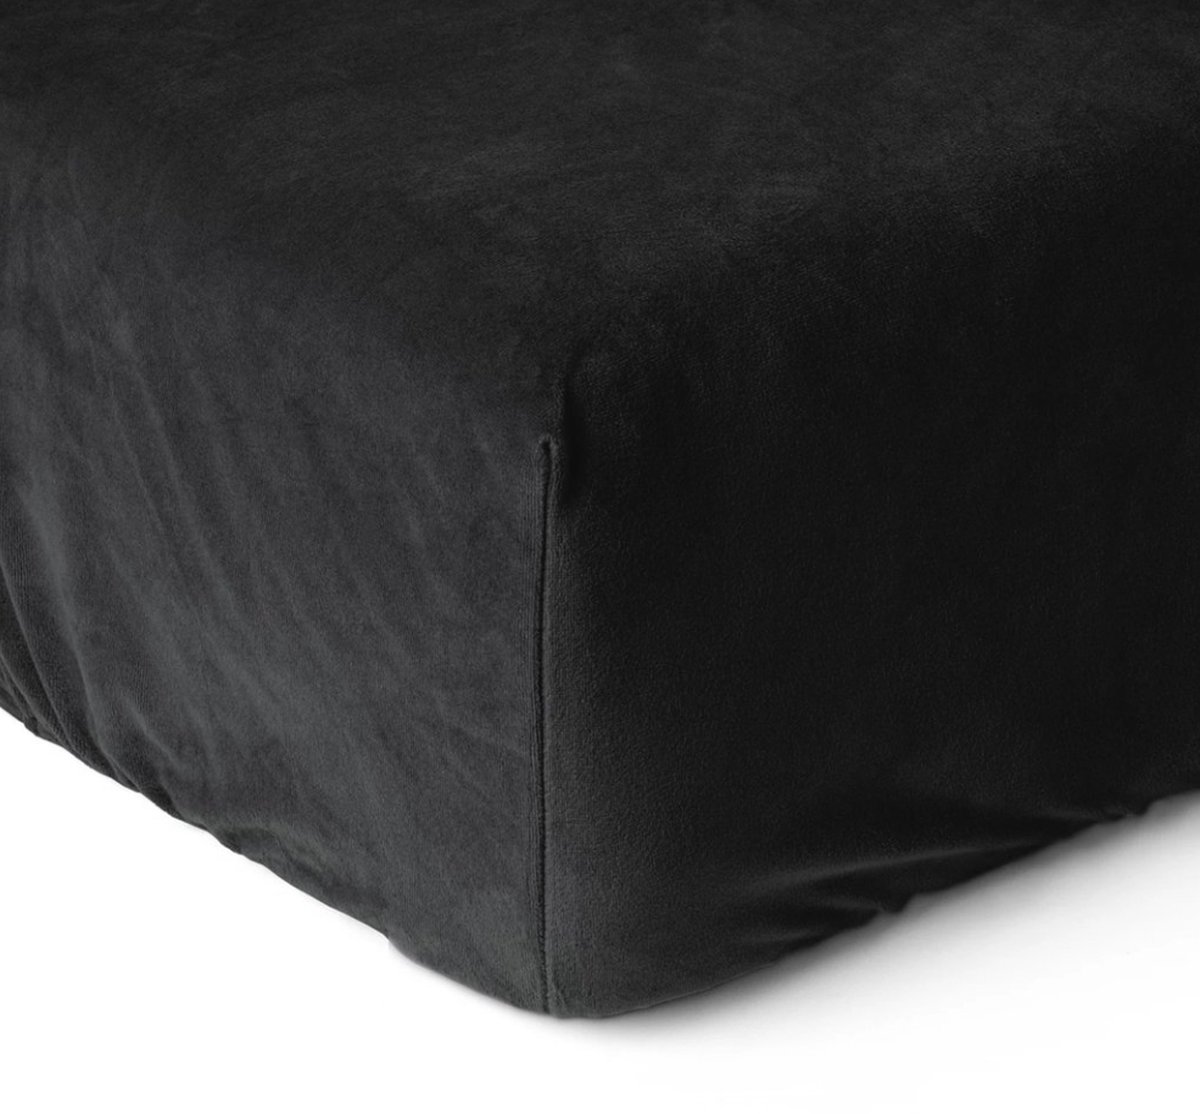 Fluweel zachte velvet hoeslaken zwart - 140x200 (tweepersoons) - dikke kwaliteit - zeer comfortabel - ideale pasvorm